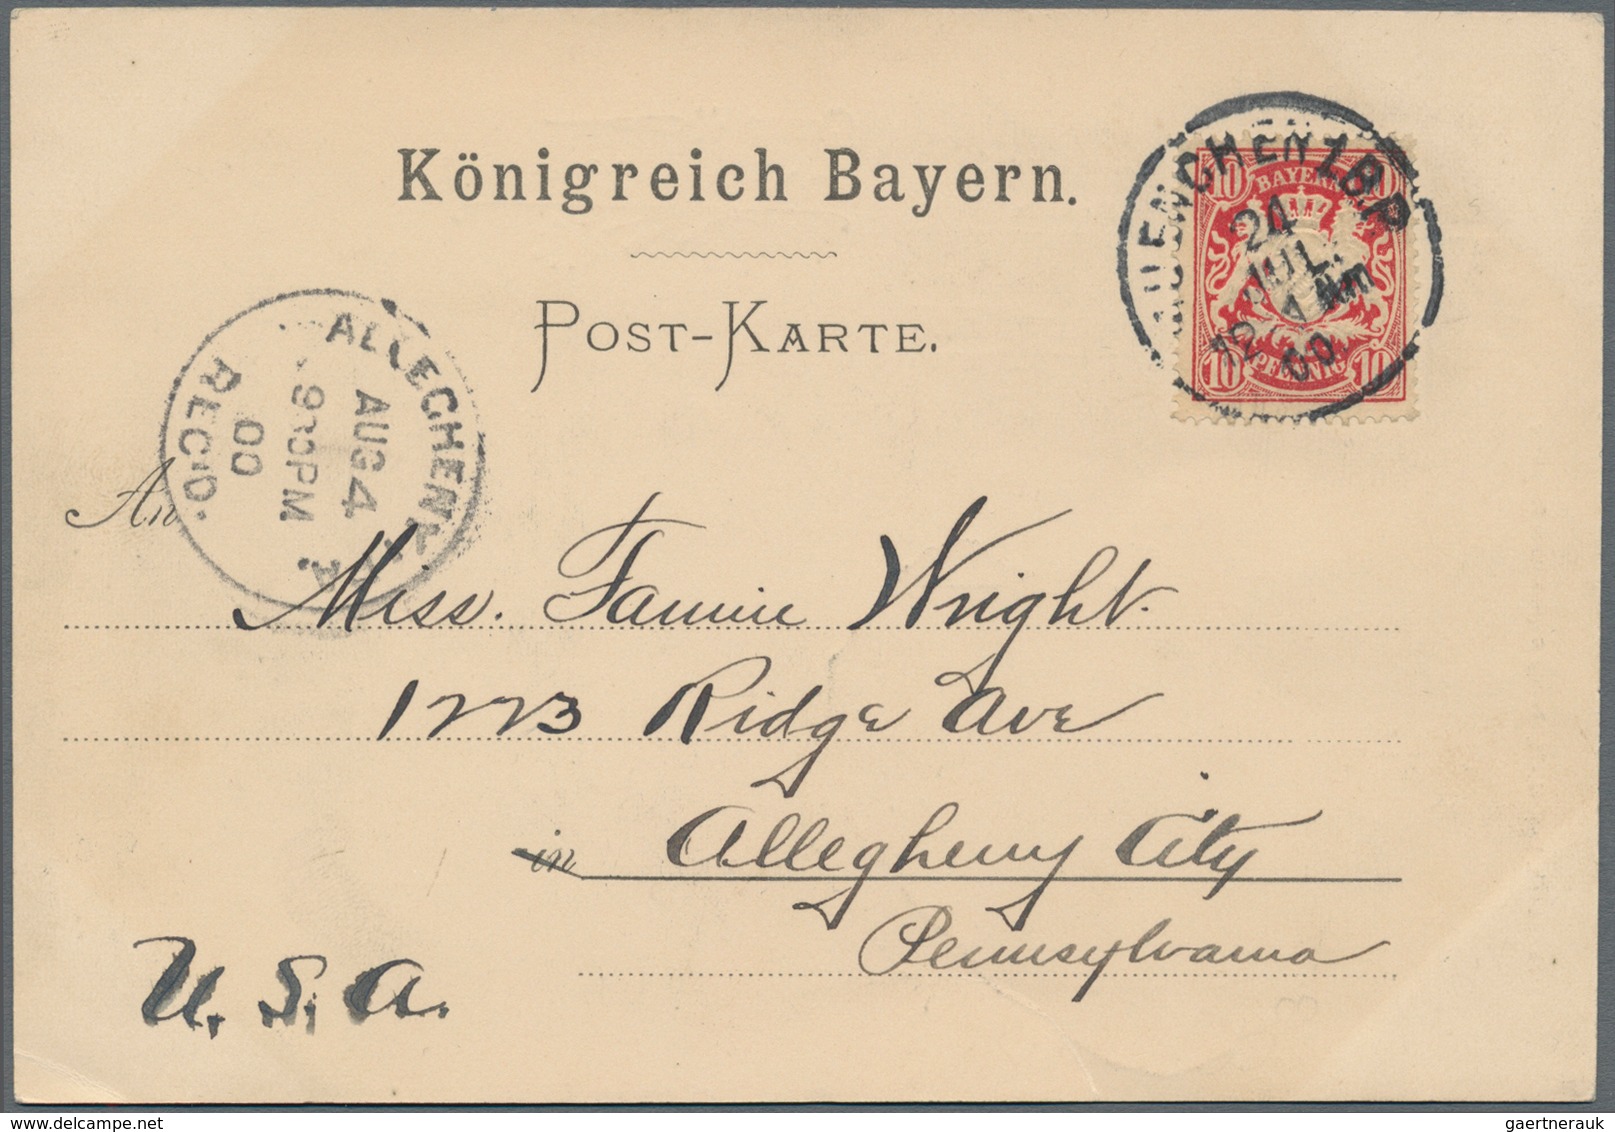 Bayern - Marken und Briefe: 1850/1920 (ca.), nette Zusammenstellung mit 20 Briefen und Karten (dabei